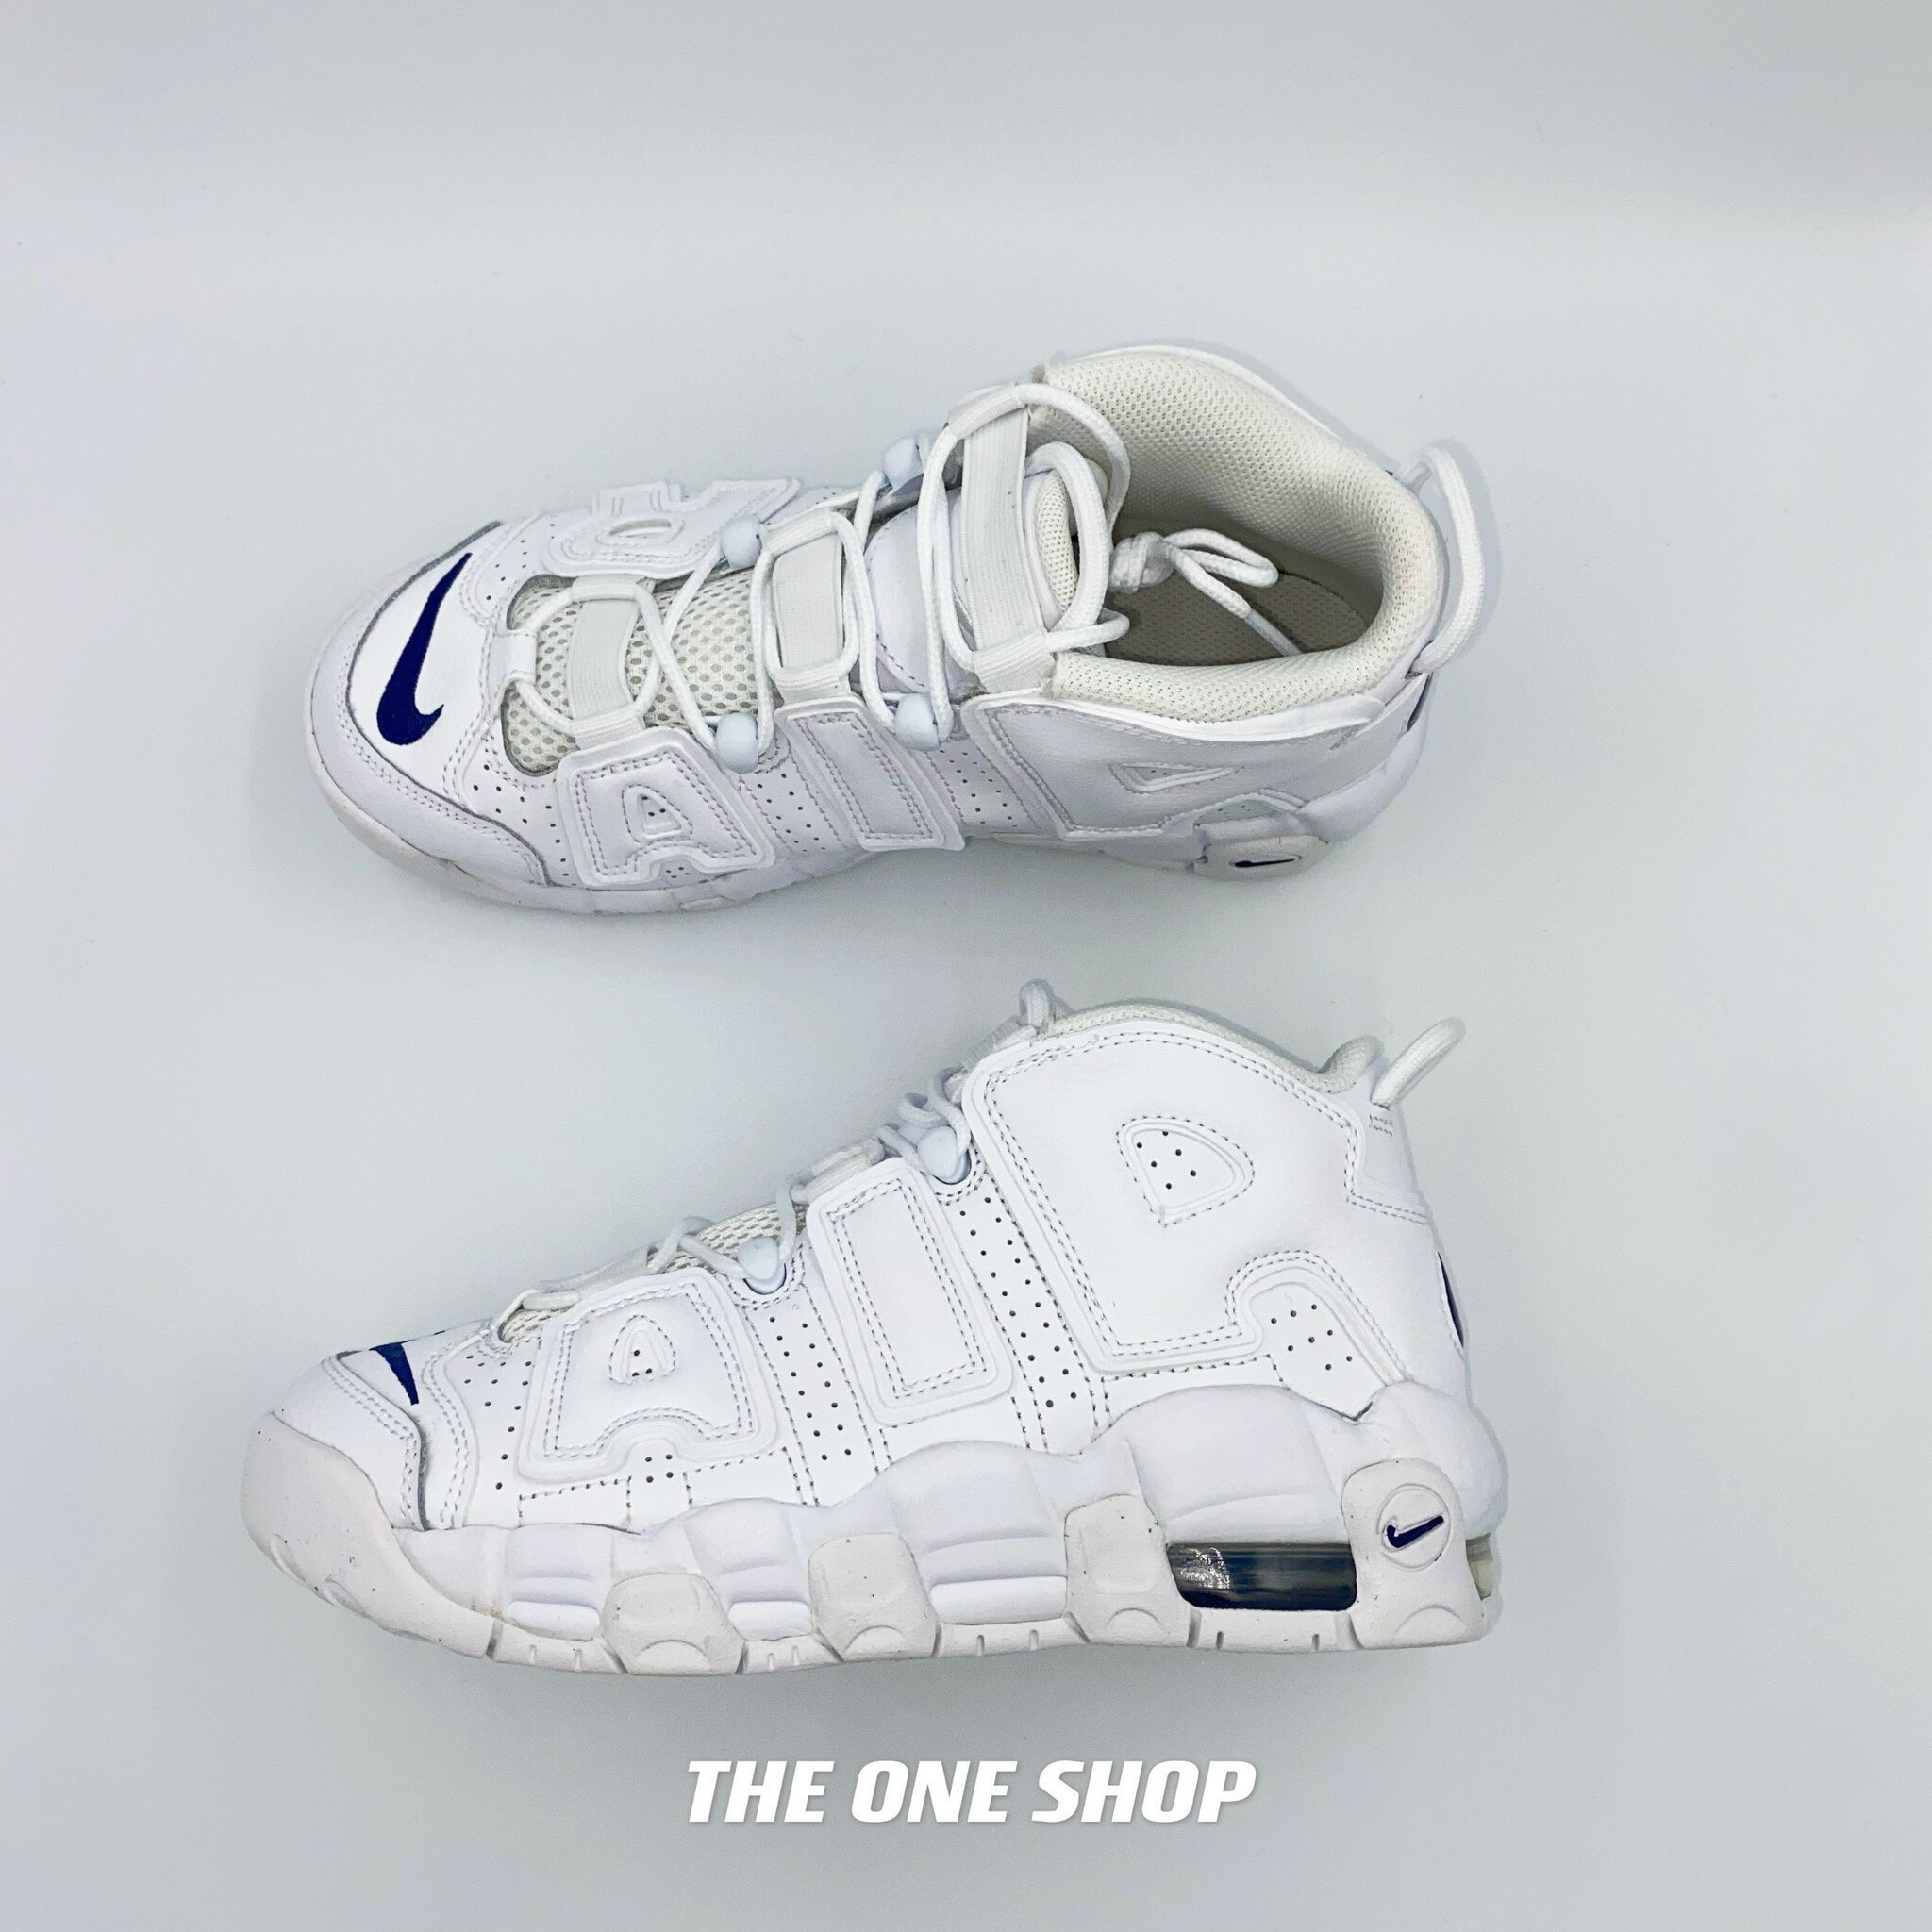 NIKE AIR MORE UPTEMPO 大AIR 白色全白籃球鞋DH9719-100 | The One